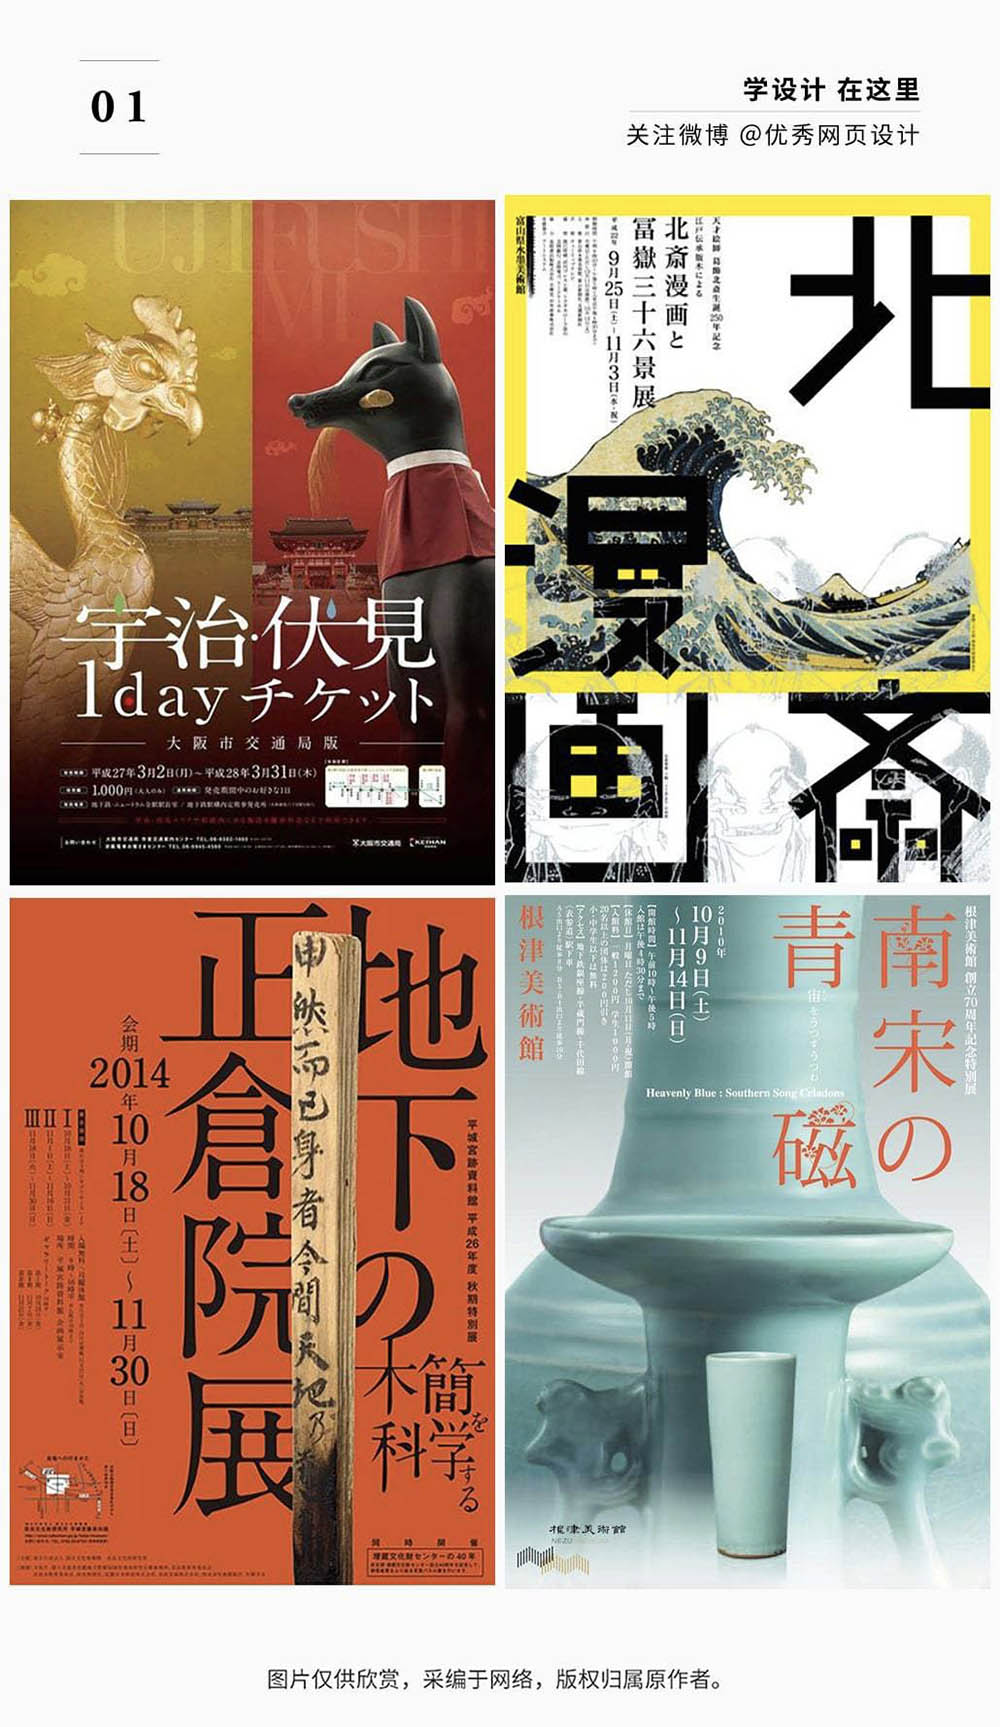 日本美术馆展览海报设计